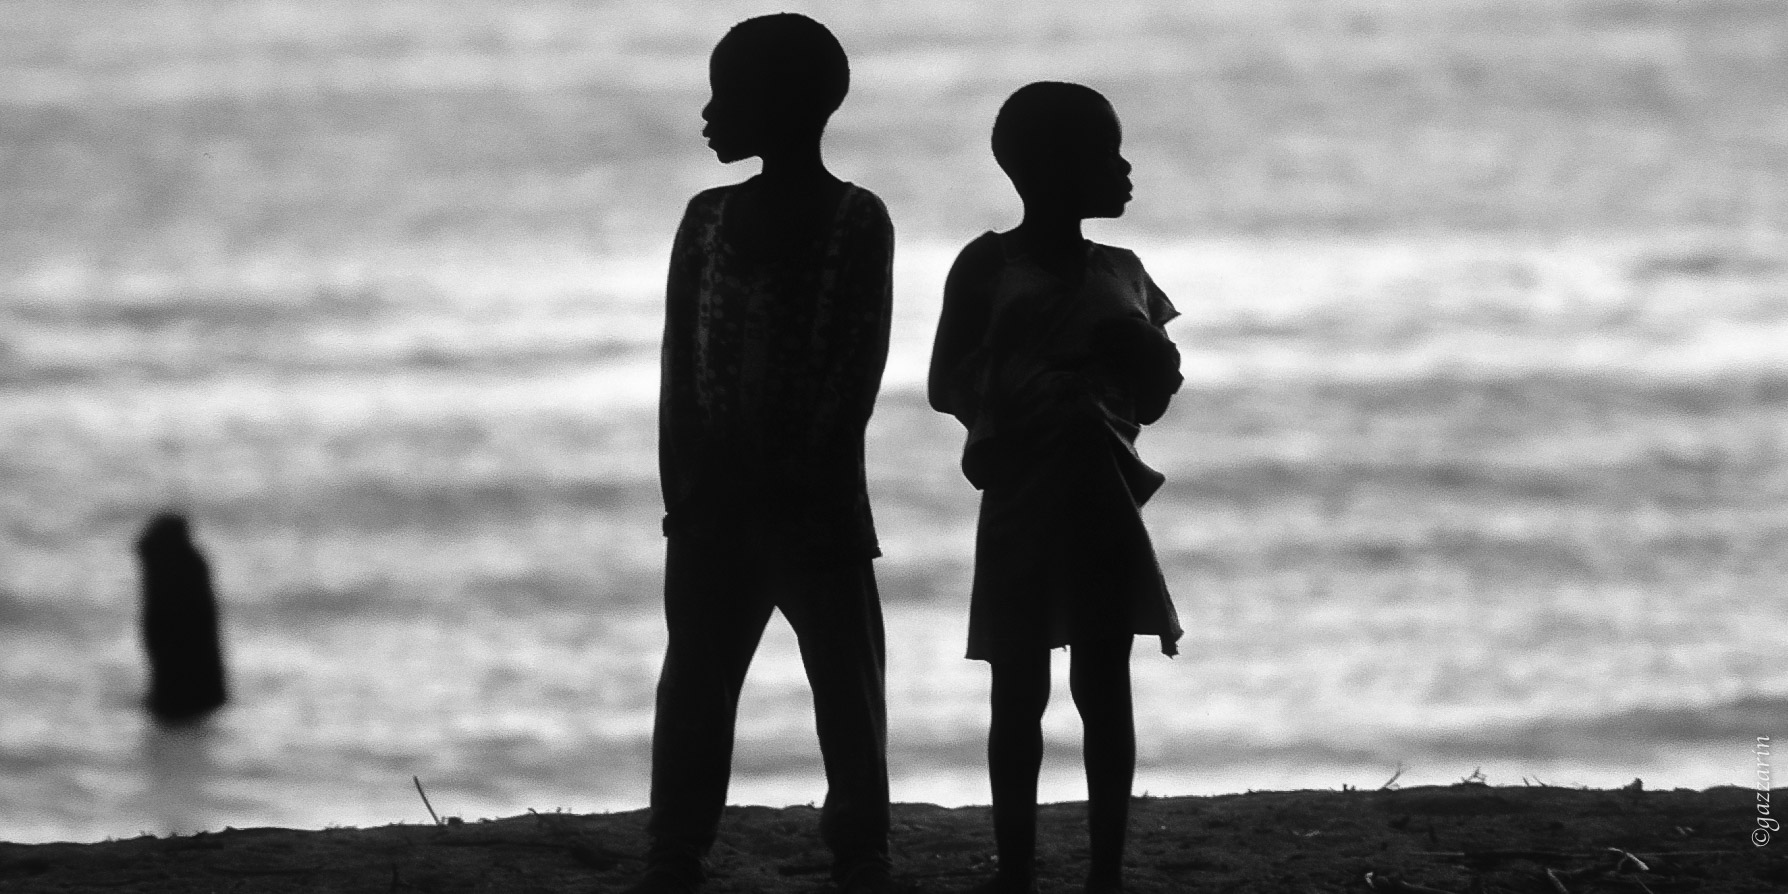 Geschwister am Ufer (Malawisee)